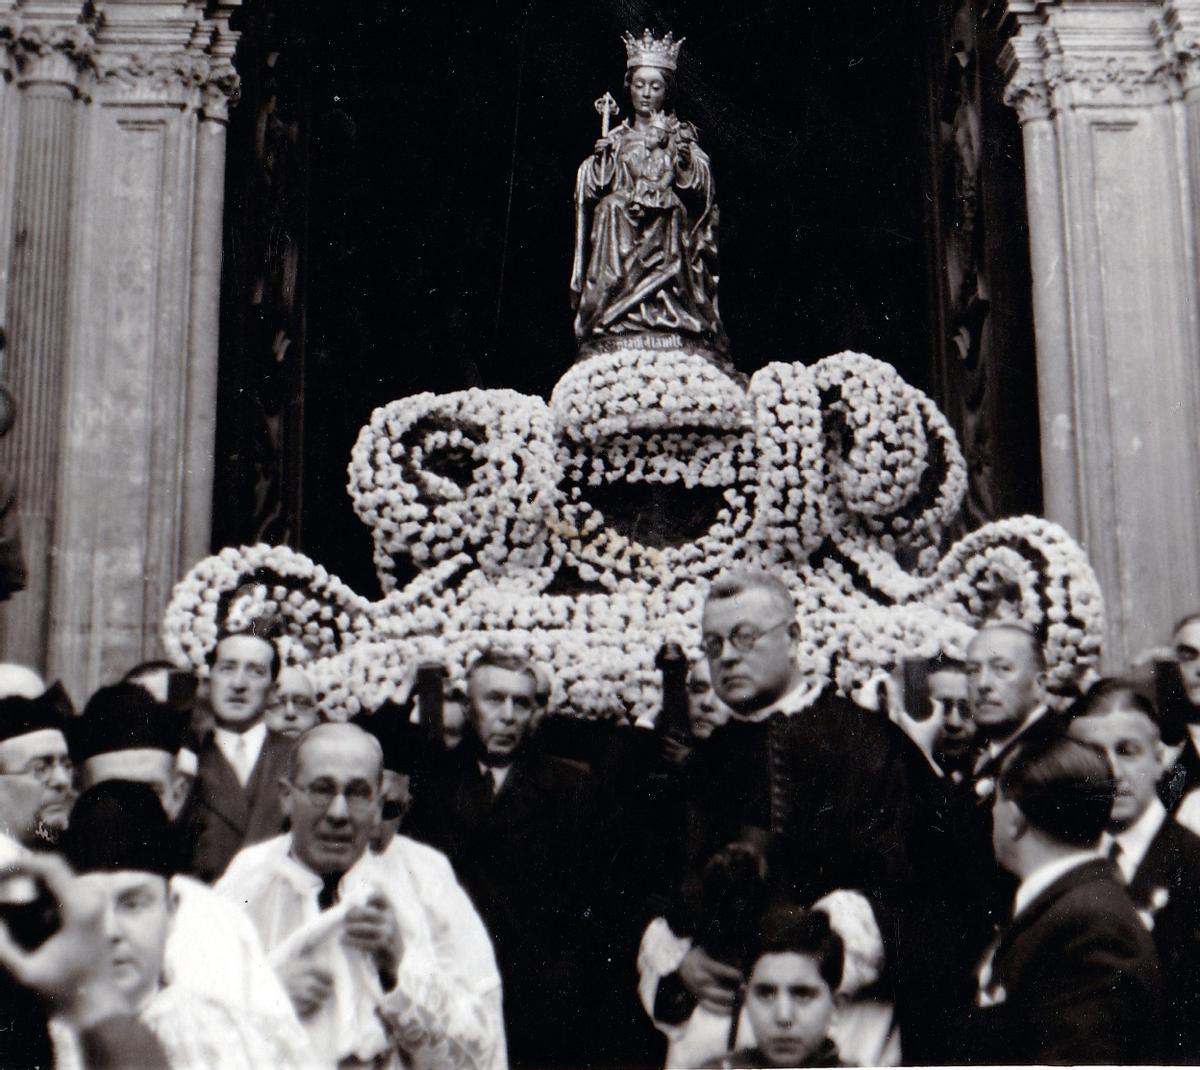 Francisco García Almendro, hermano mayor de la Victoria, porta el trono de la Patrona el día de su coronación.